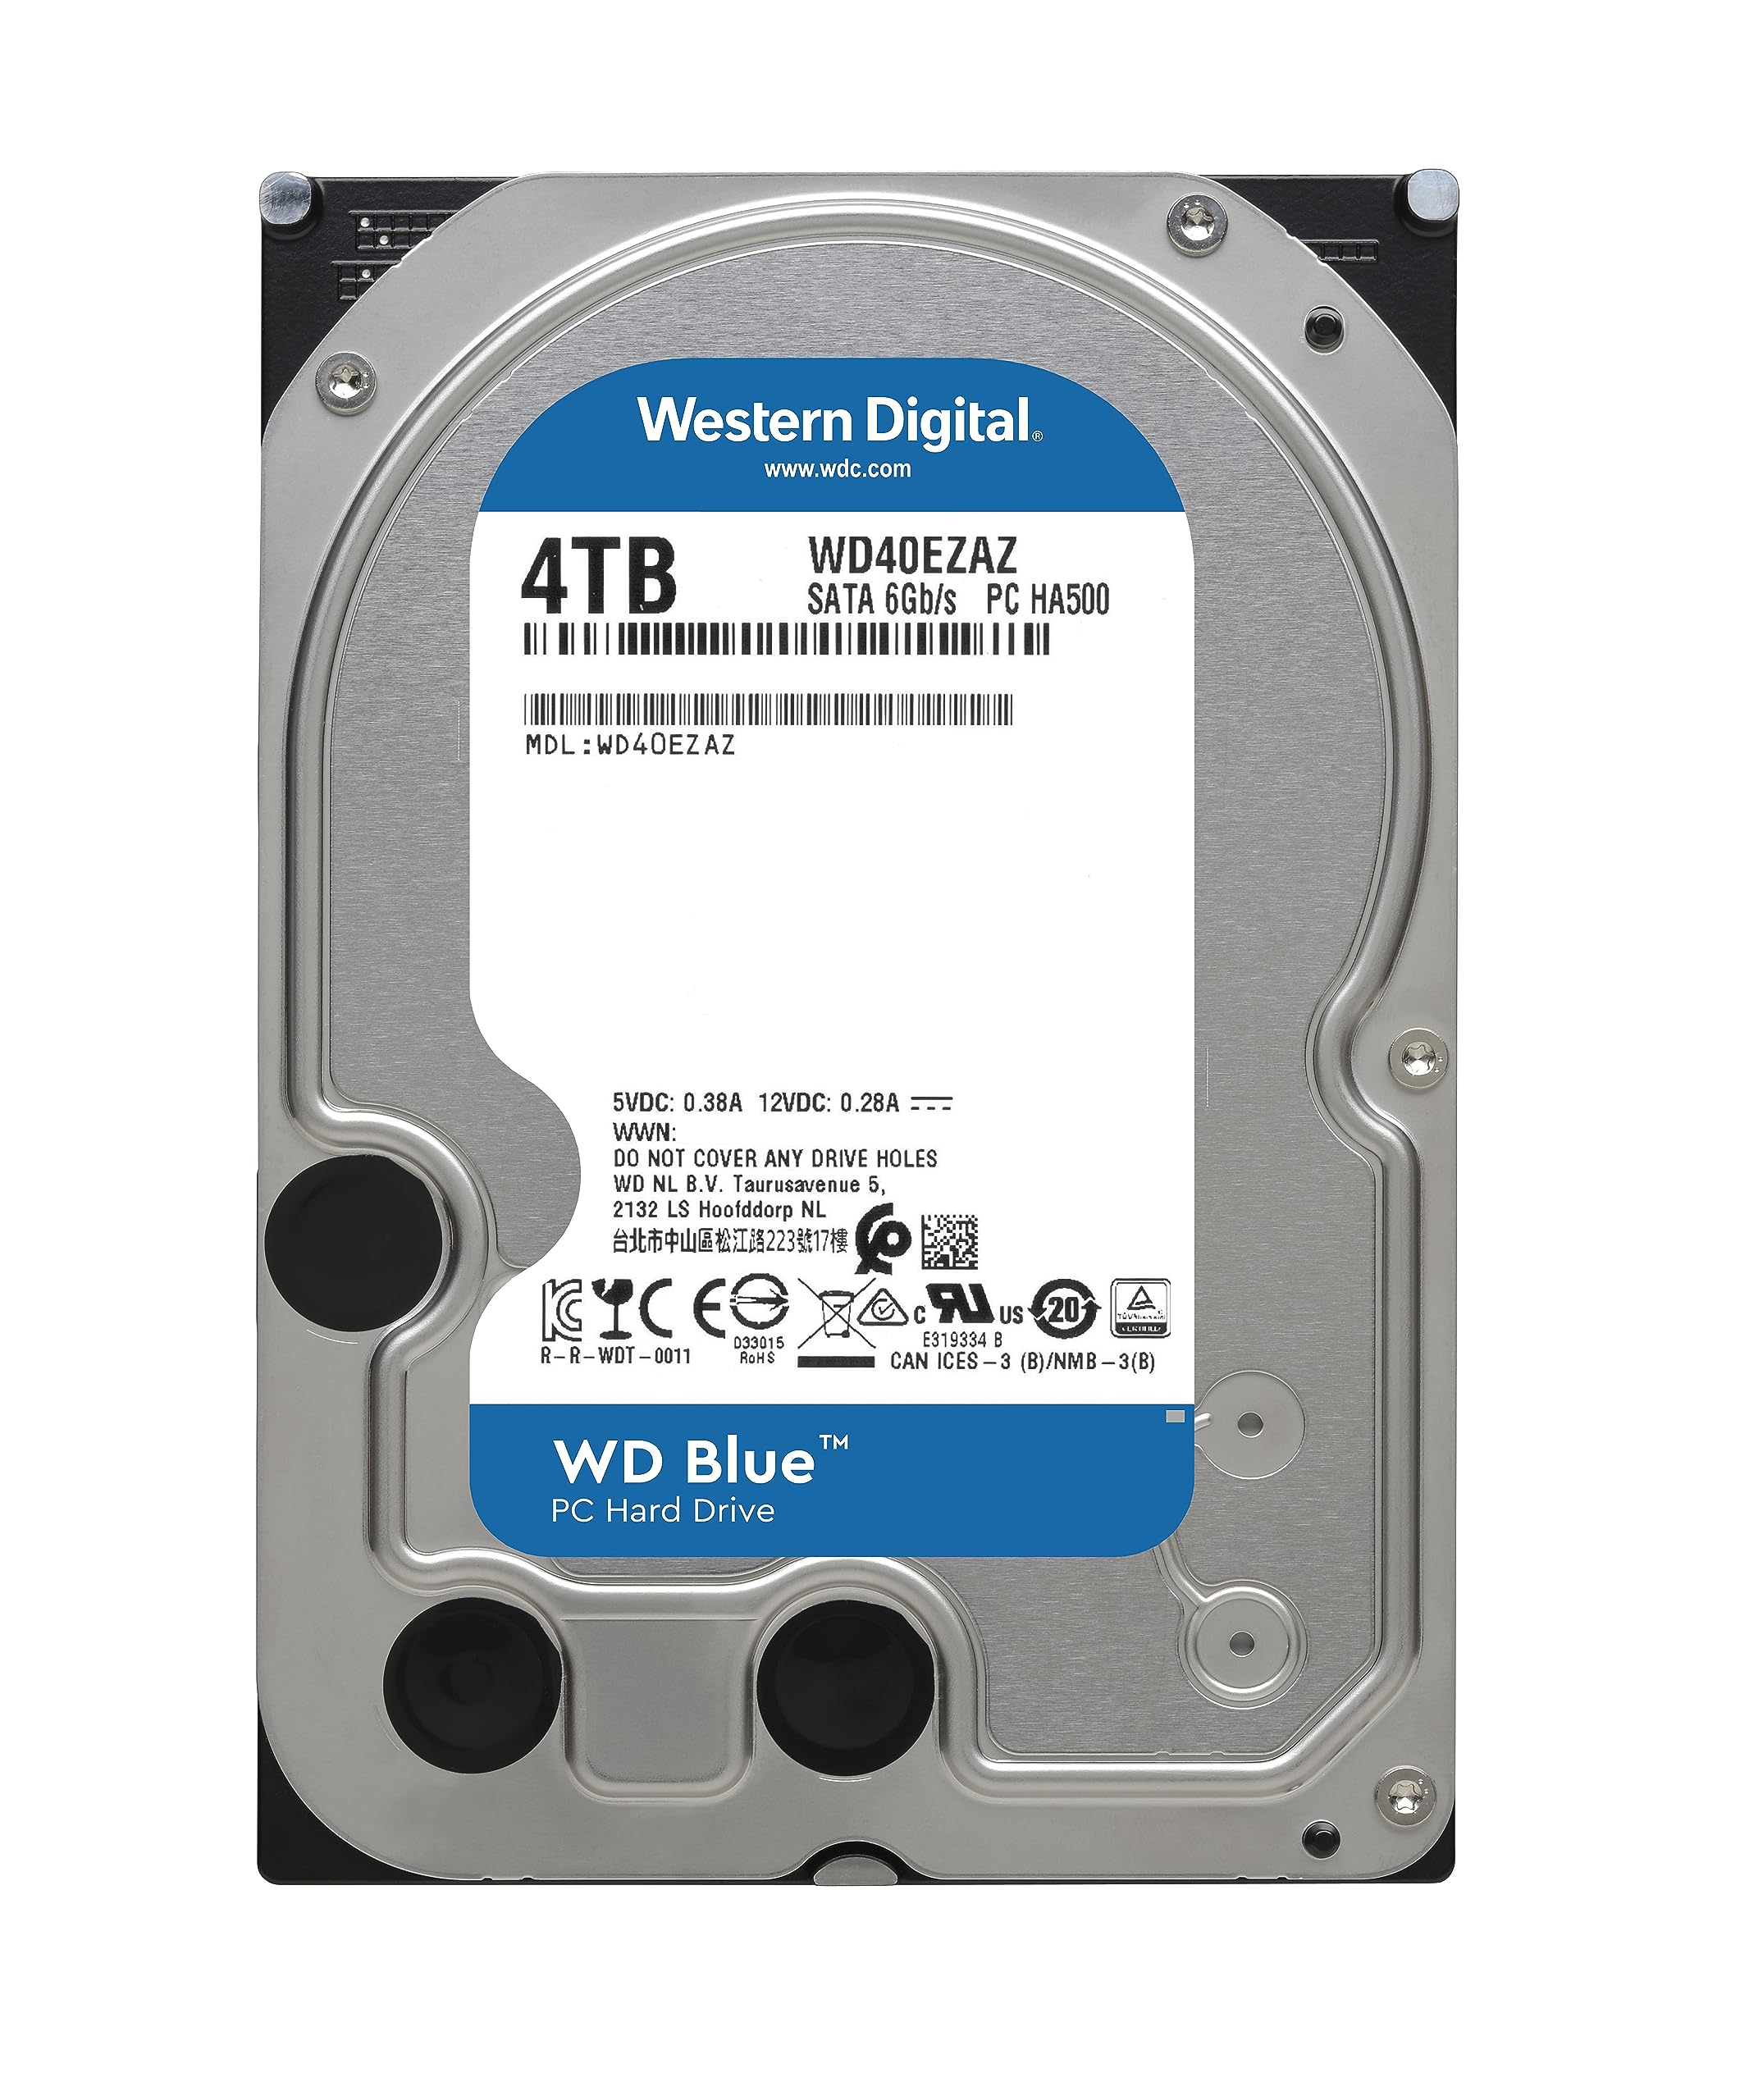 Western Digital 4TB WD Blue PC Internal Hard Drive HDD - 5400 RPM, SATA 6 Gb/s, 256 MB Cache, 3.5" - WD40EZAZ